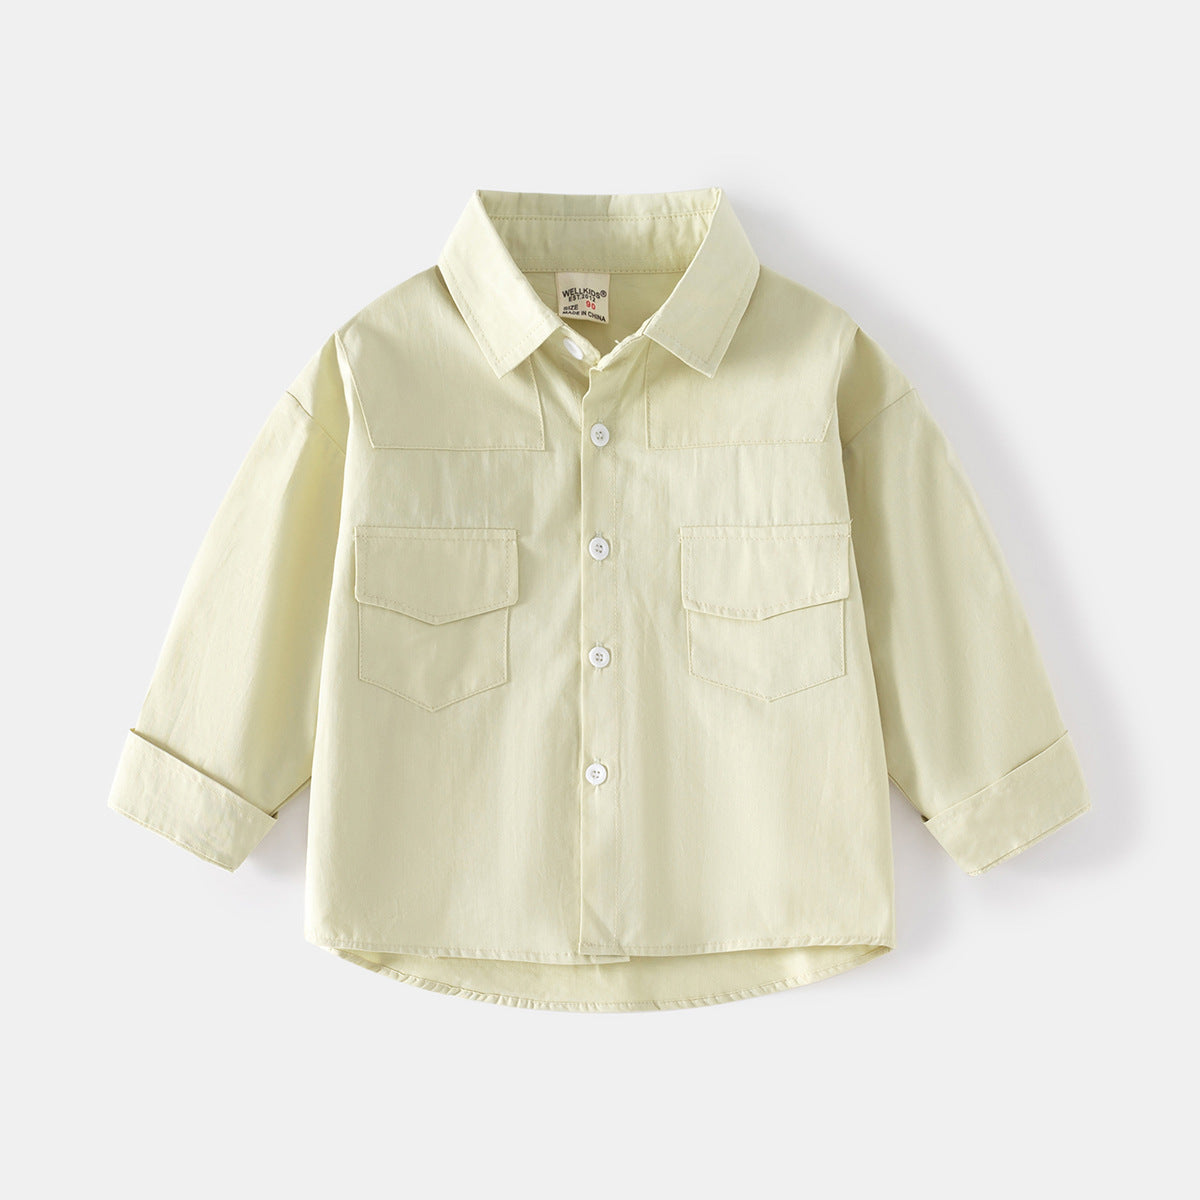 [5131038] - Baju Atasan Kemeja Polos Fashion Import Anak Laki-Laki - Motif Plain Color